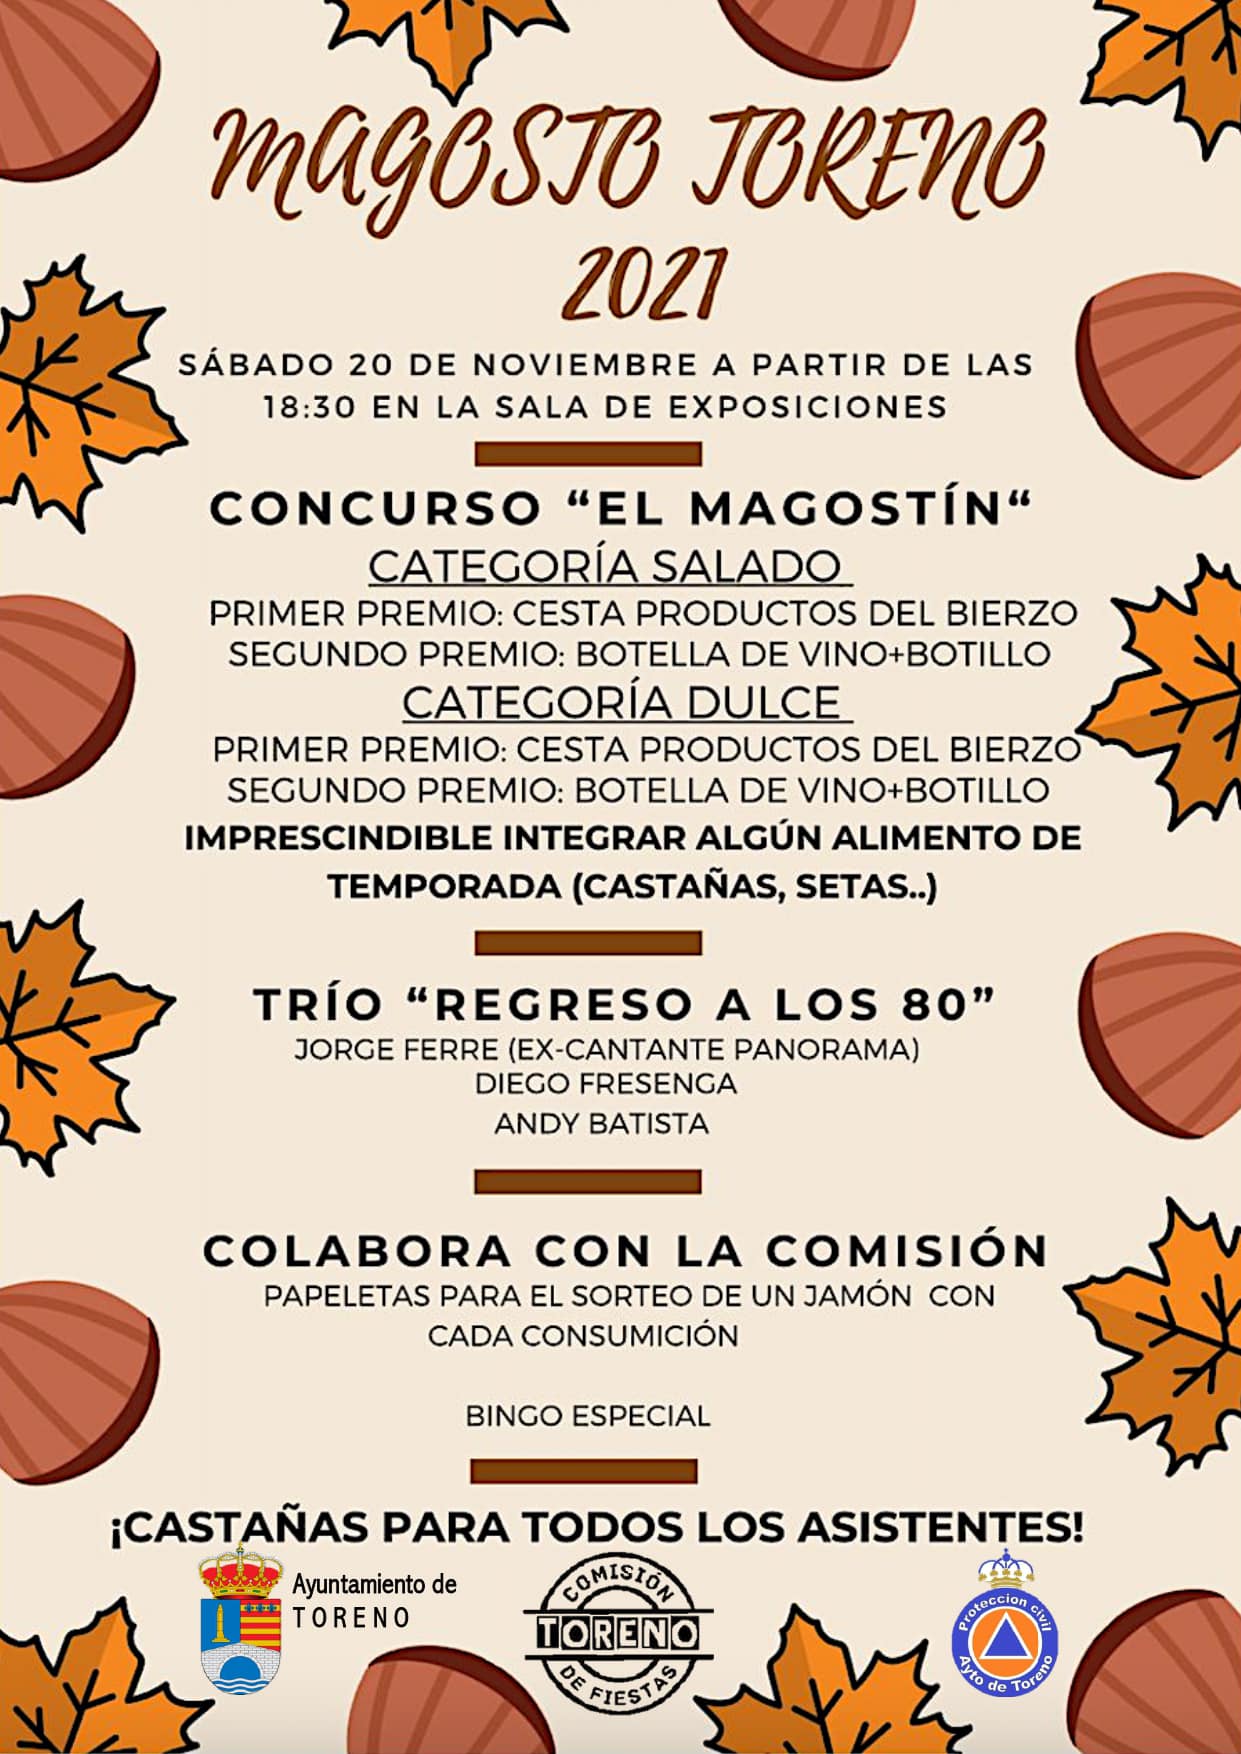 Toreno celebra un Magosto y mercadillo de otoño el próximo noviembre con música y concurso para cocinillas 3